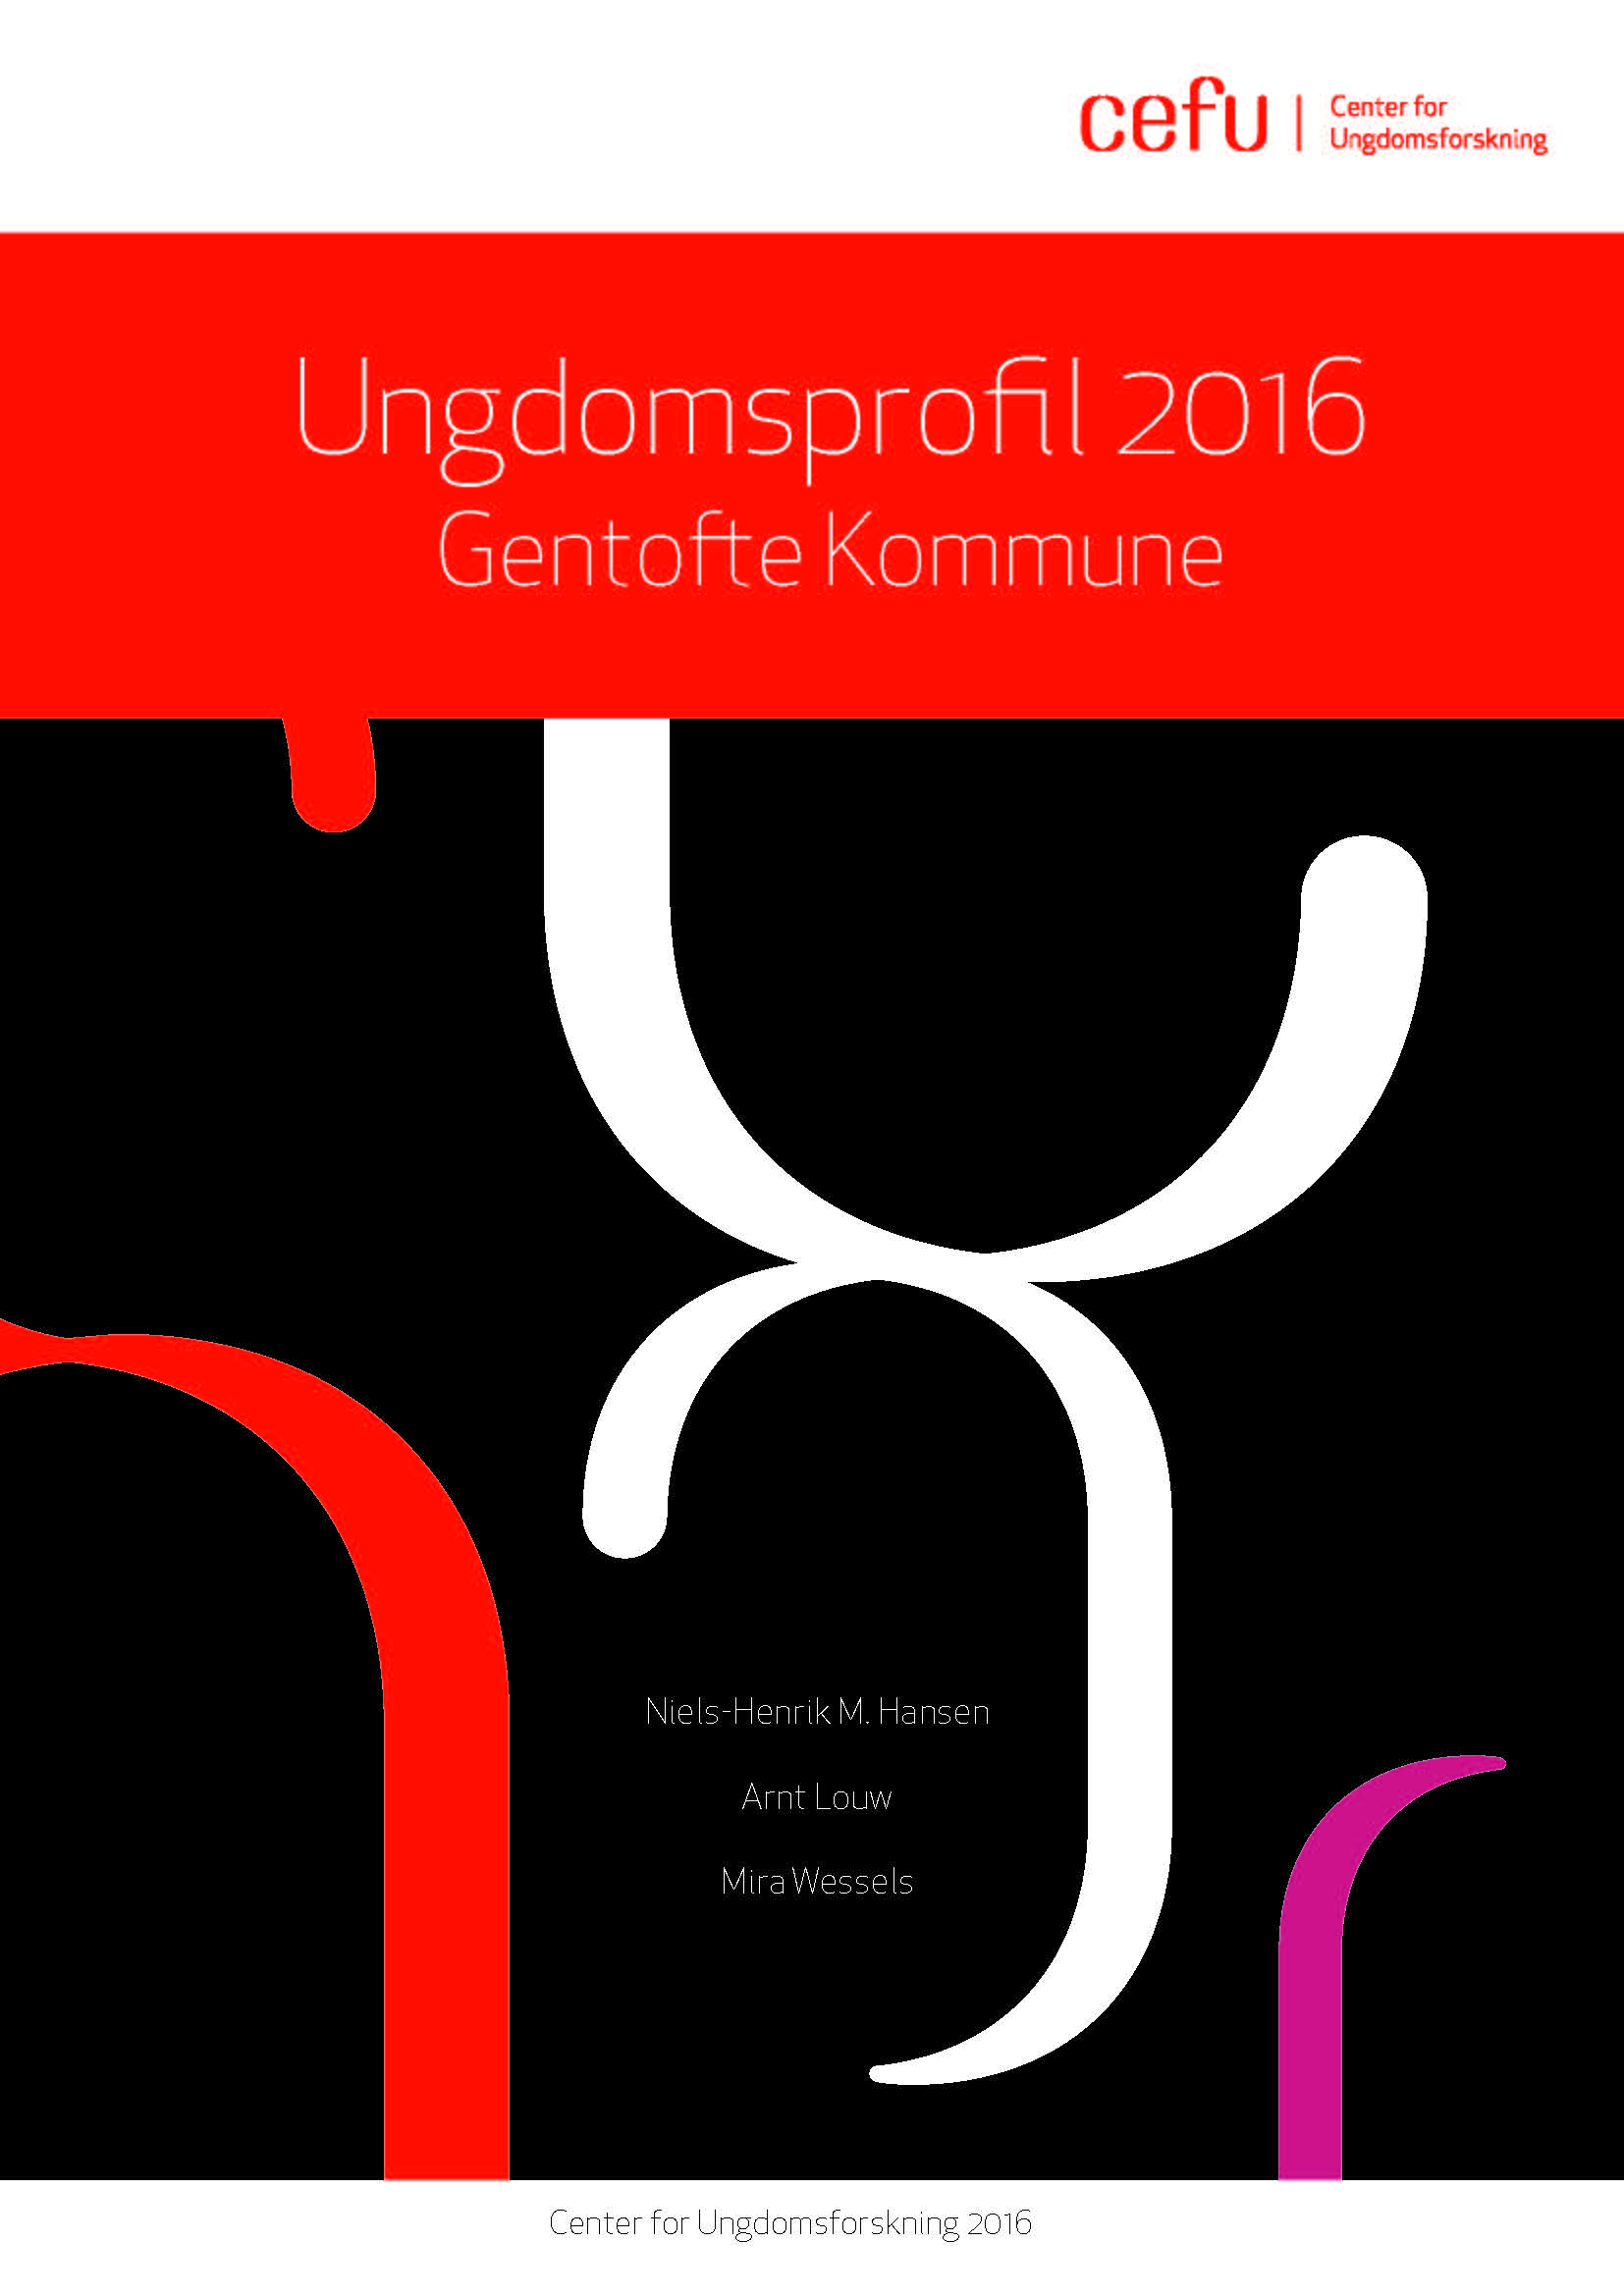 Ungdomsprofil 2016 - Gentofte Kommune